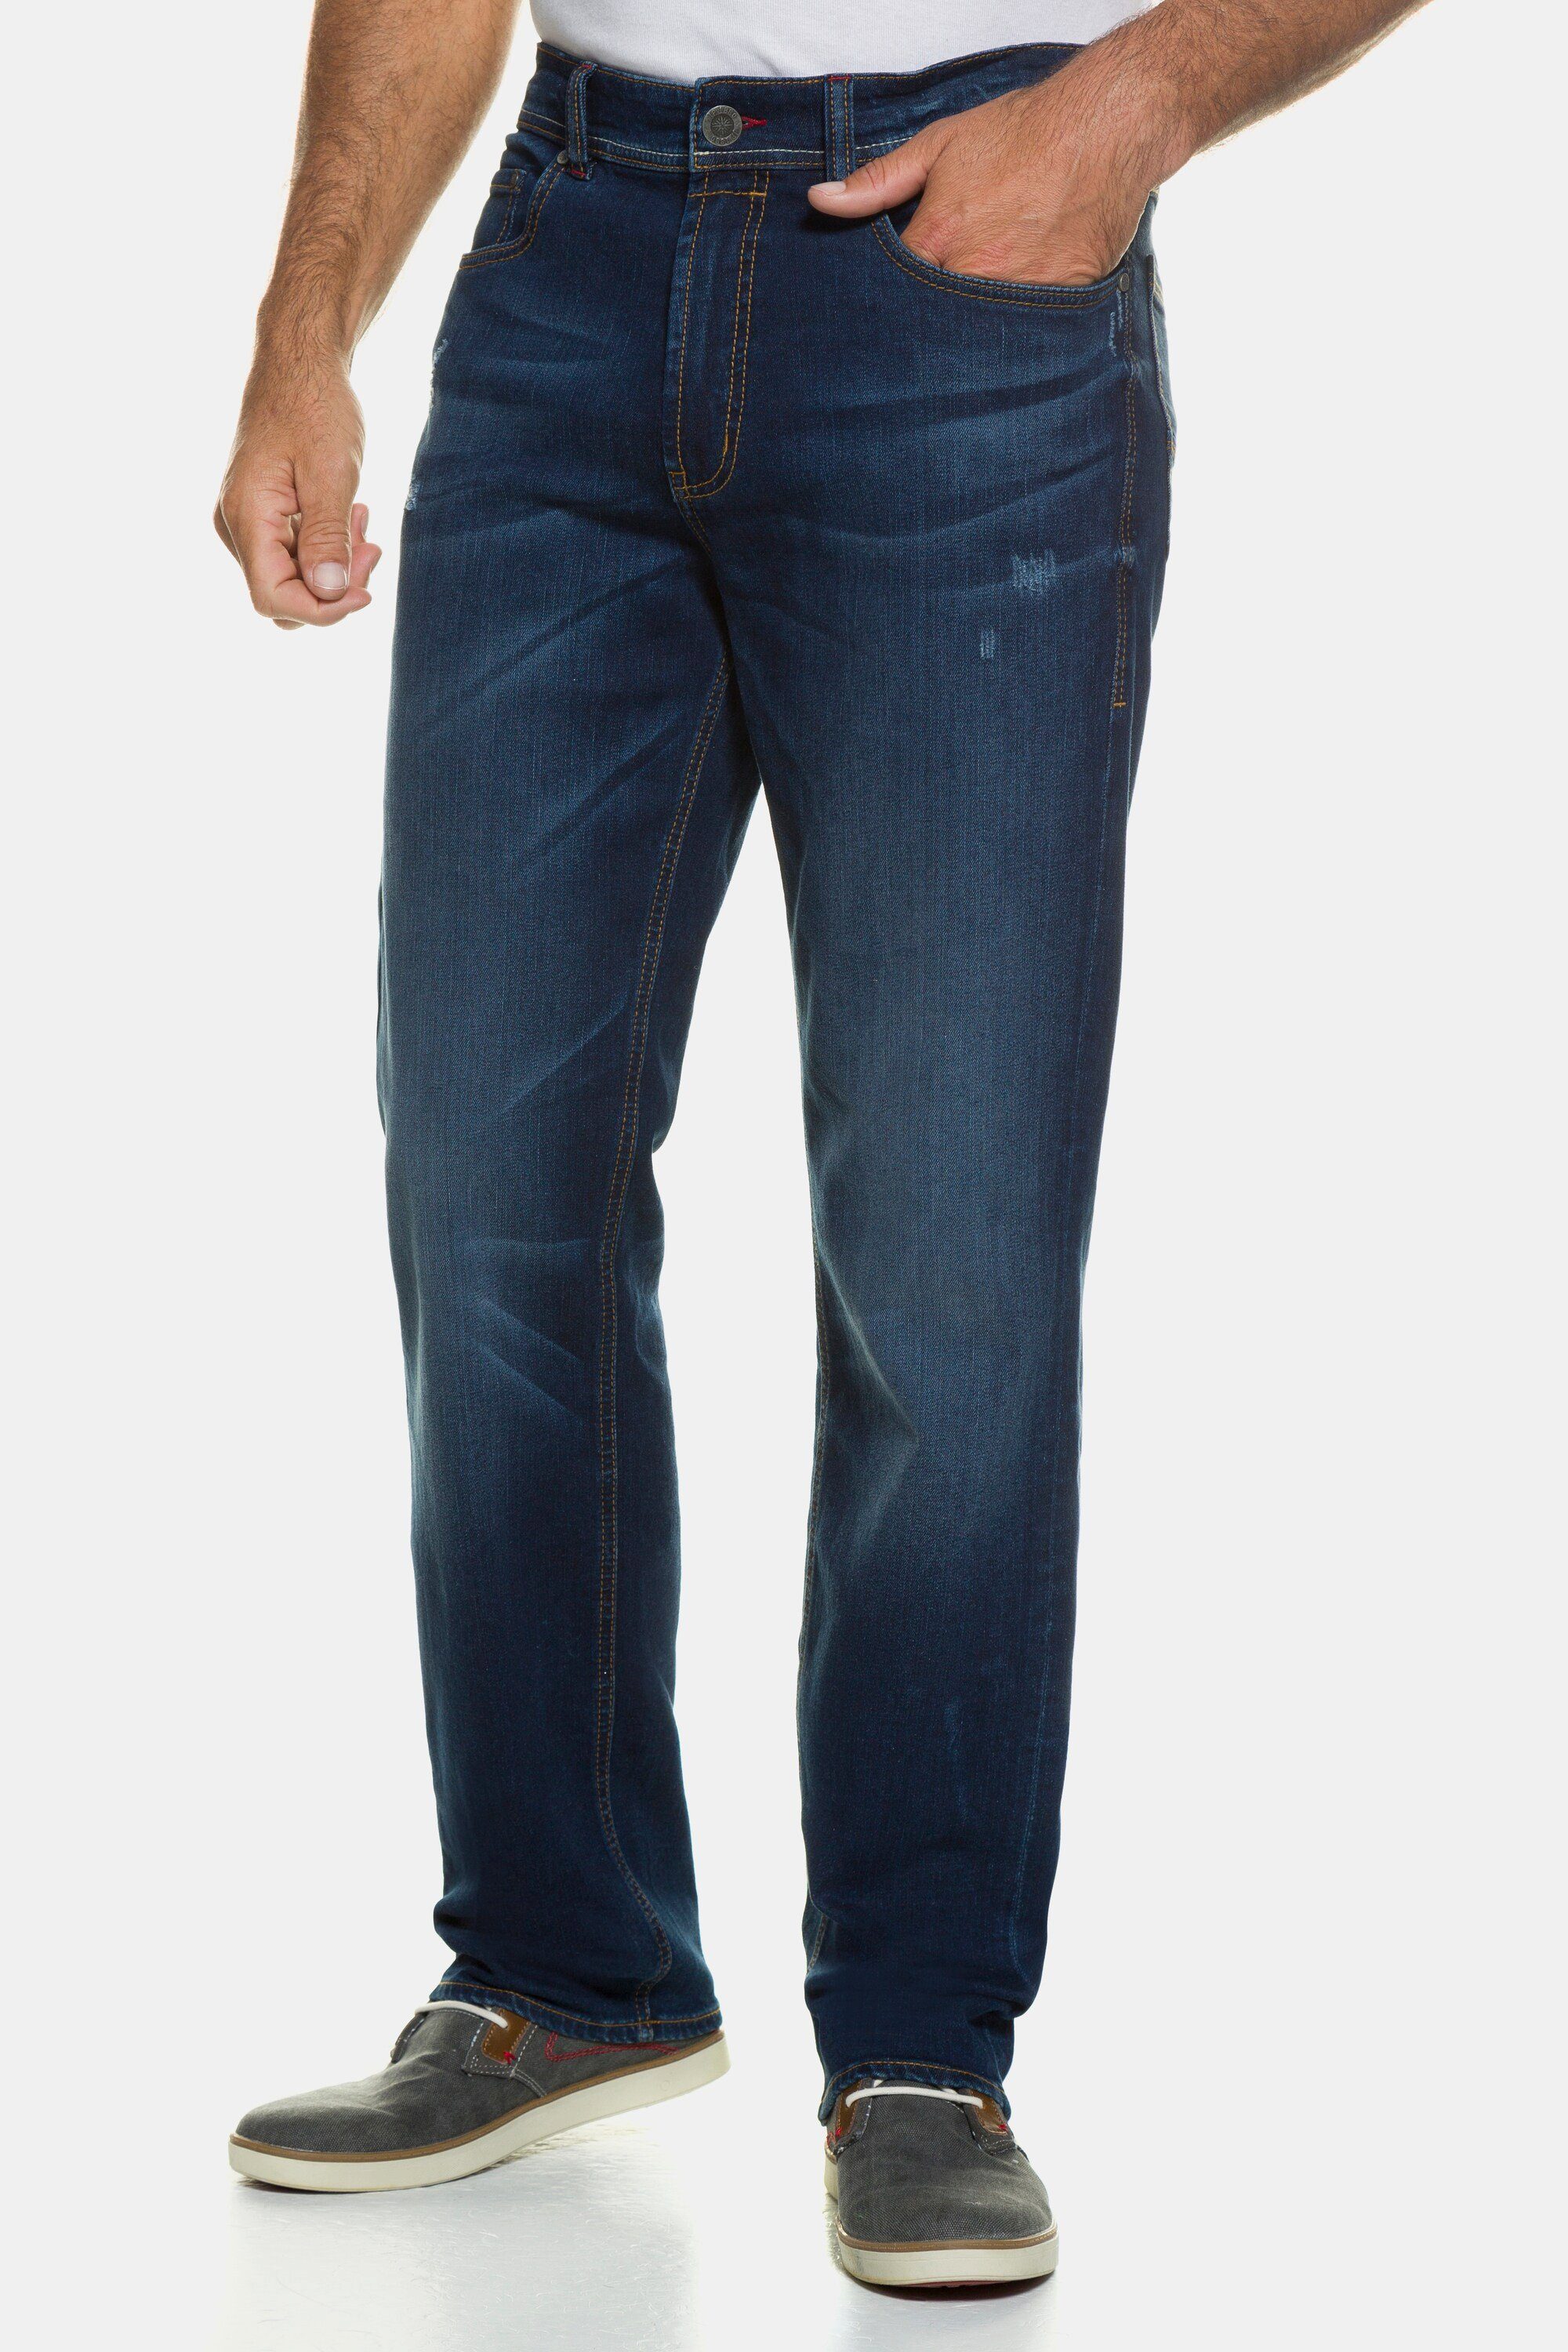 JP1880 5-Pocket-Jeans Jeans denim Gr. Denim blue 70/35 Straight Fit FLEXNAMIC® bis dark